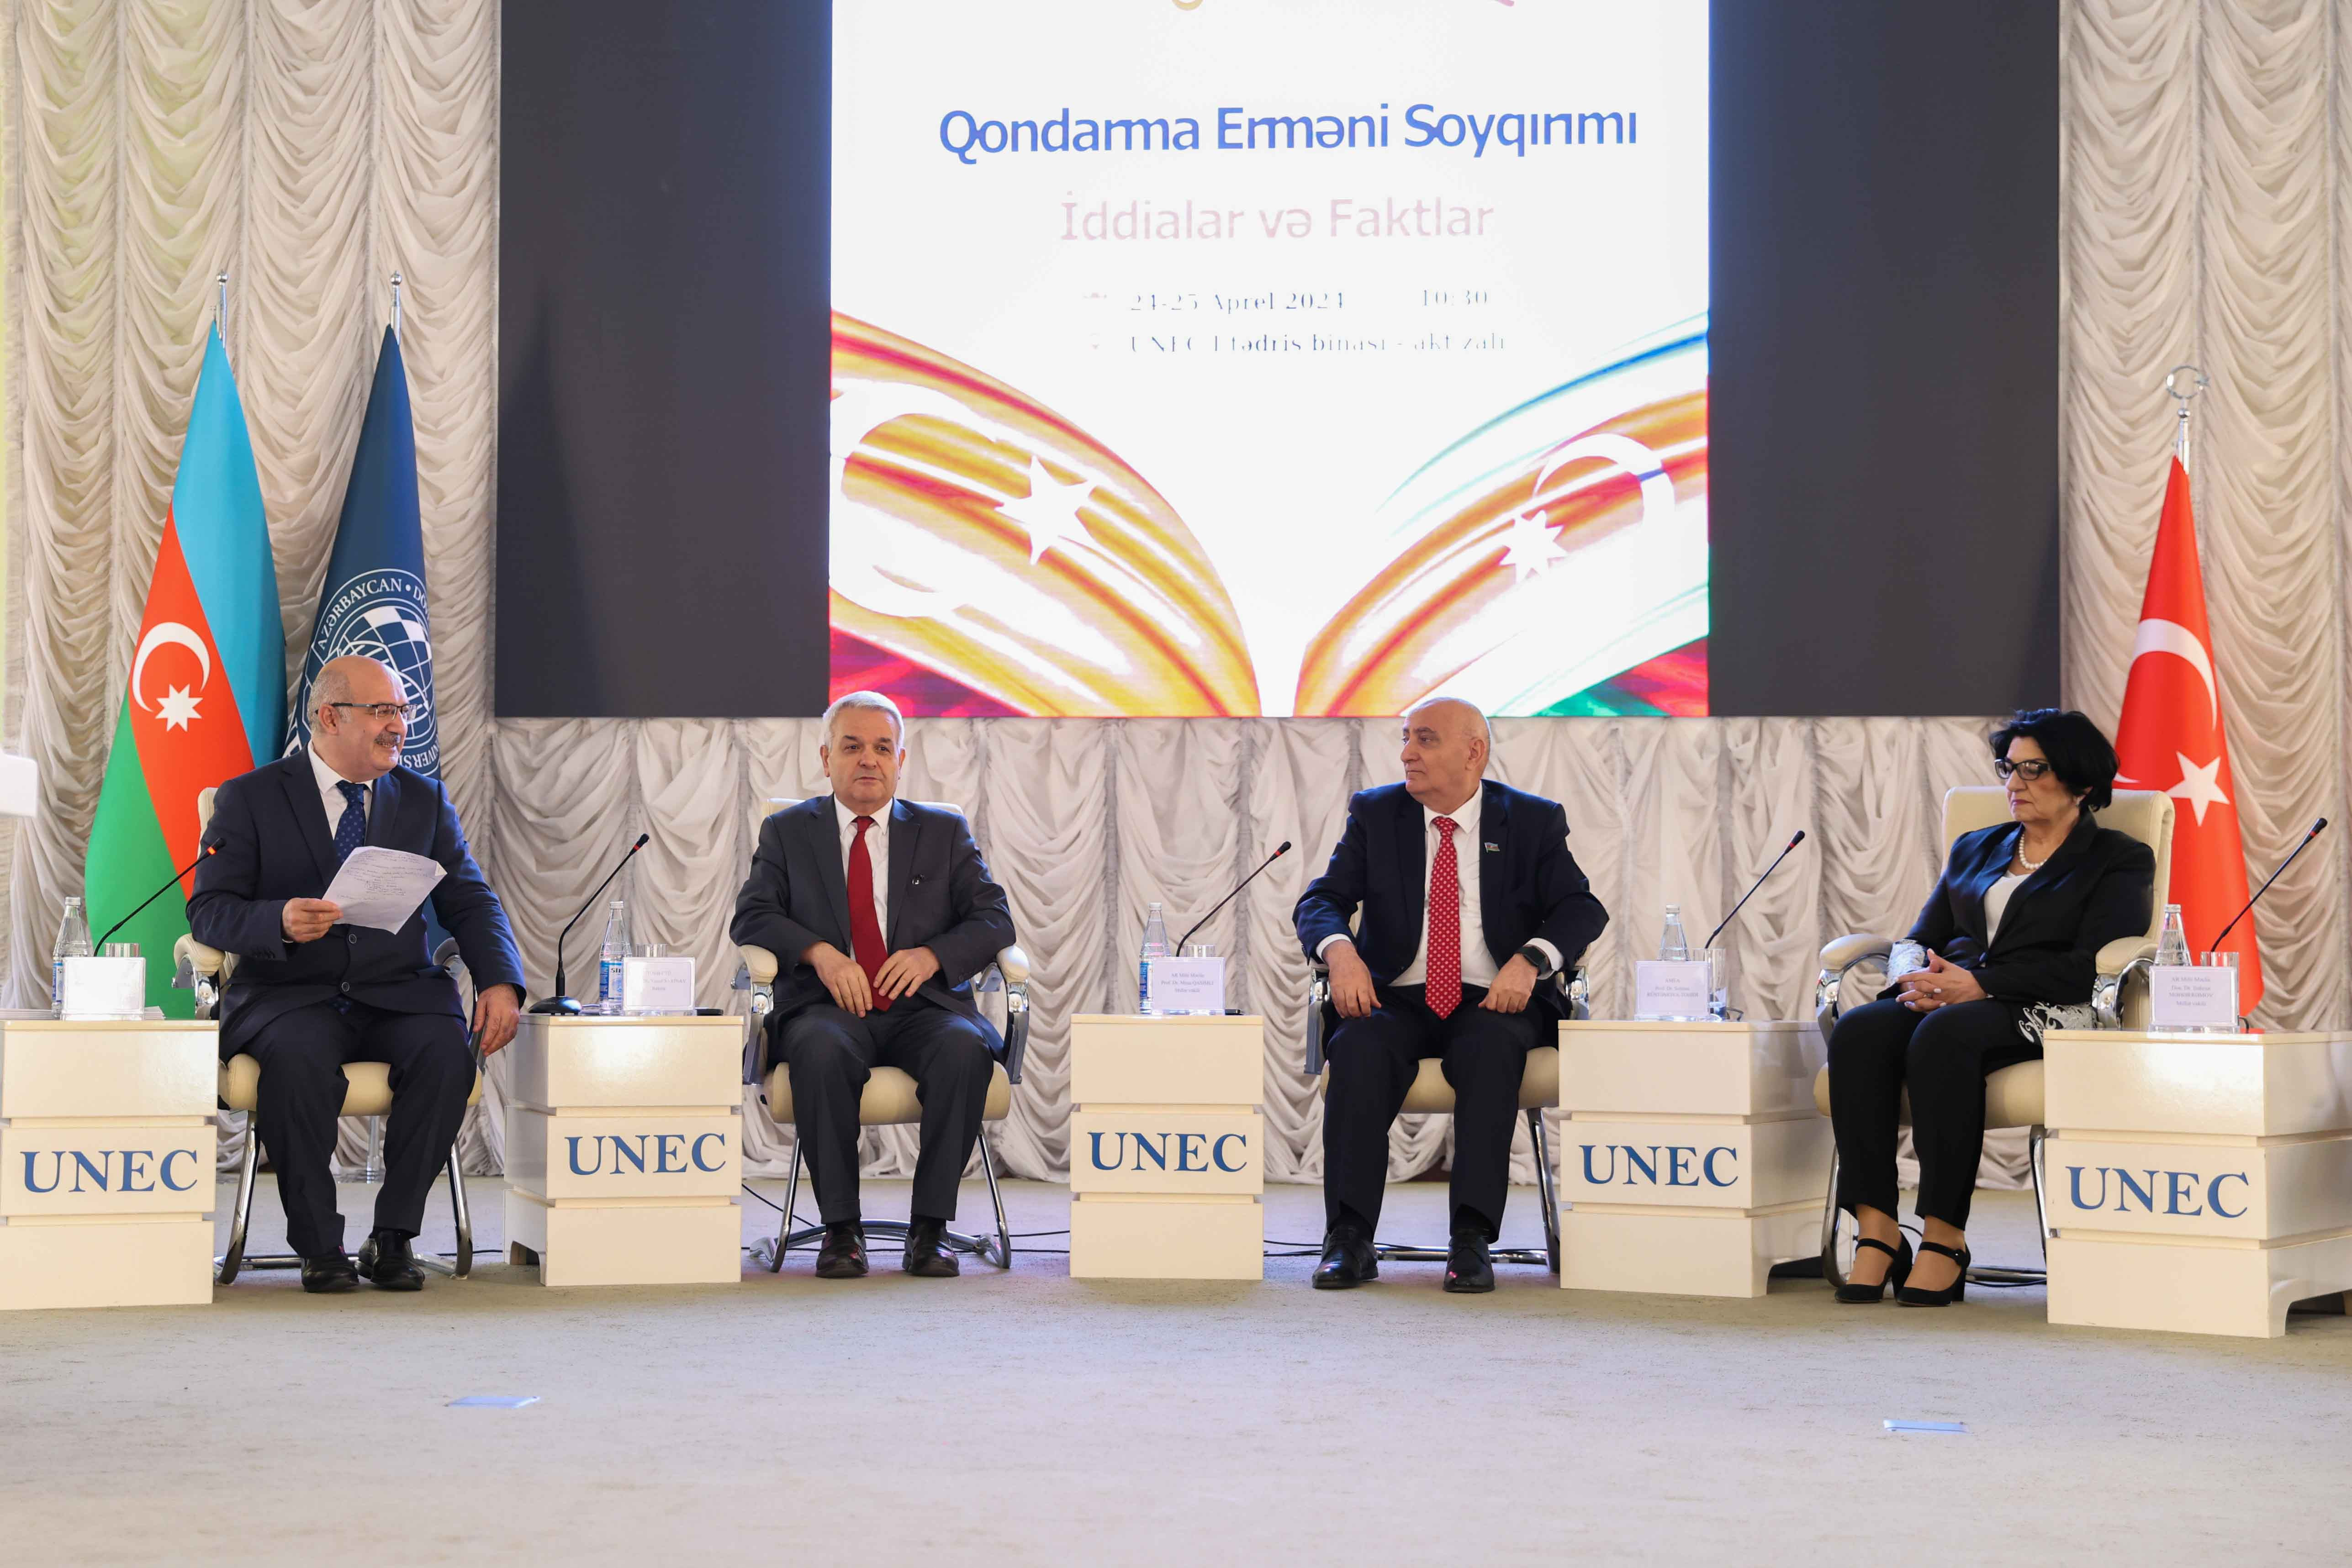 UNEC-də “Qondarma erməni soyqırımı: iddialar və faktlar” mövzusunda beynəlxalq konfrans keçirilir